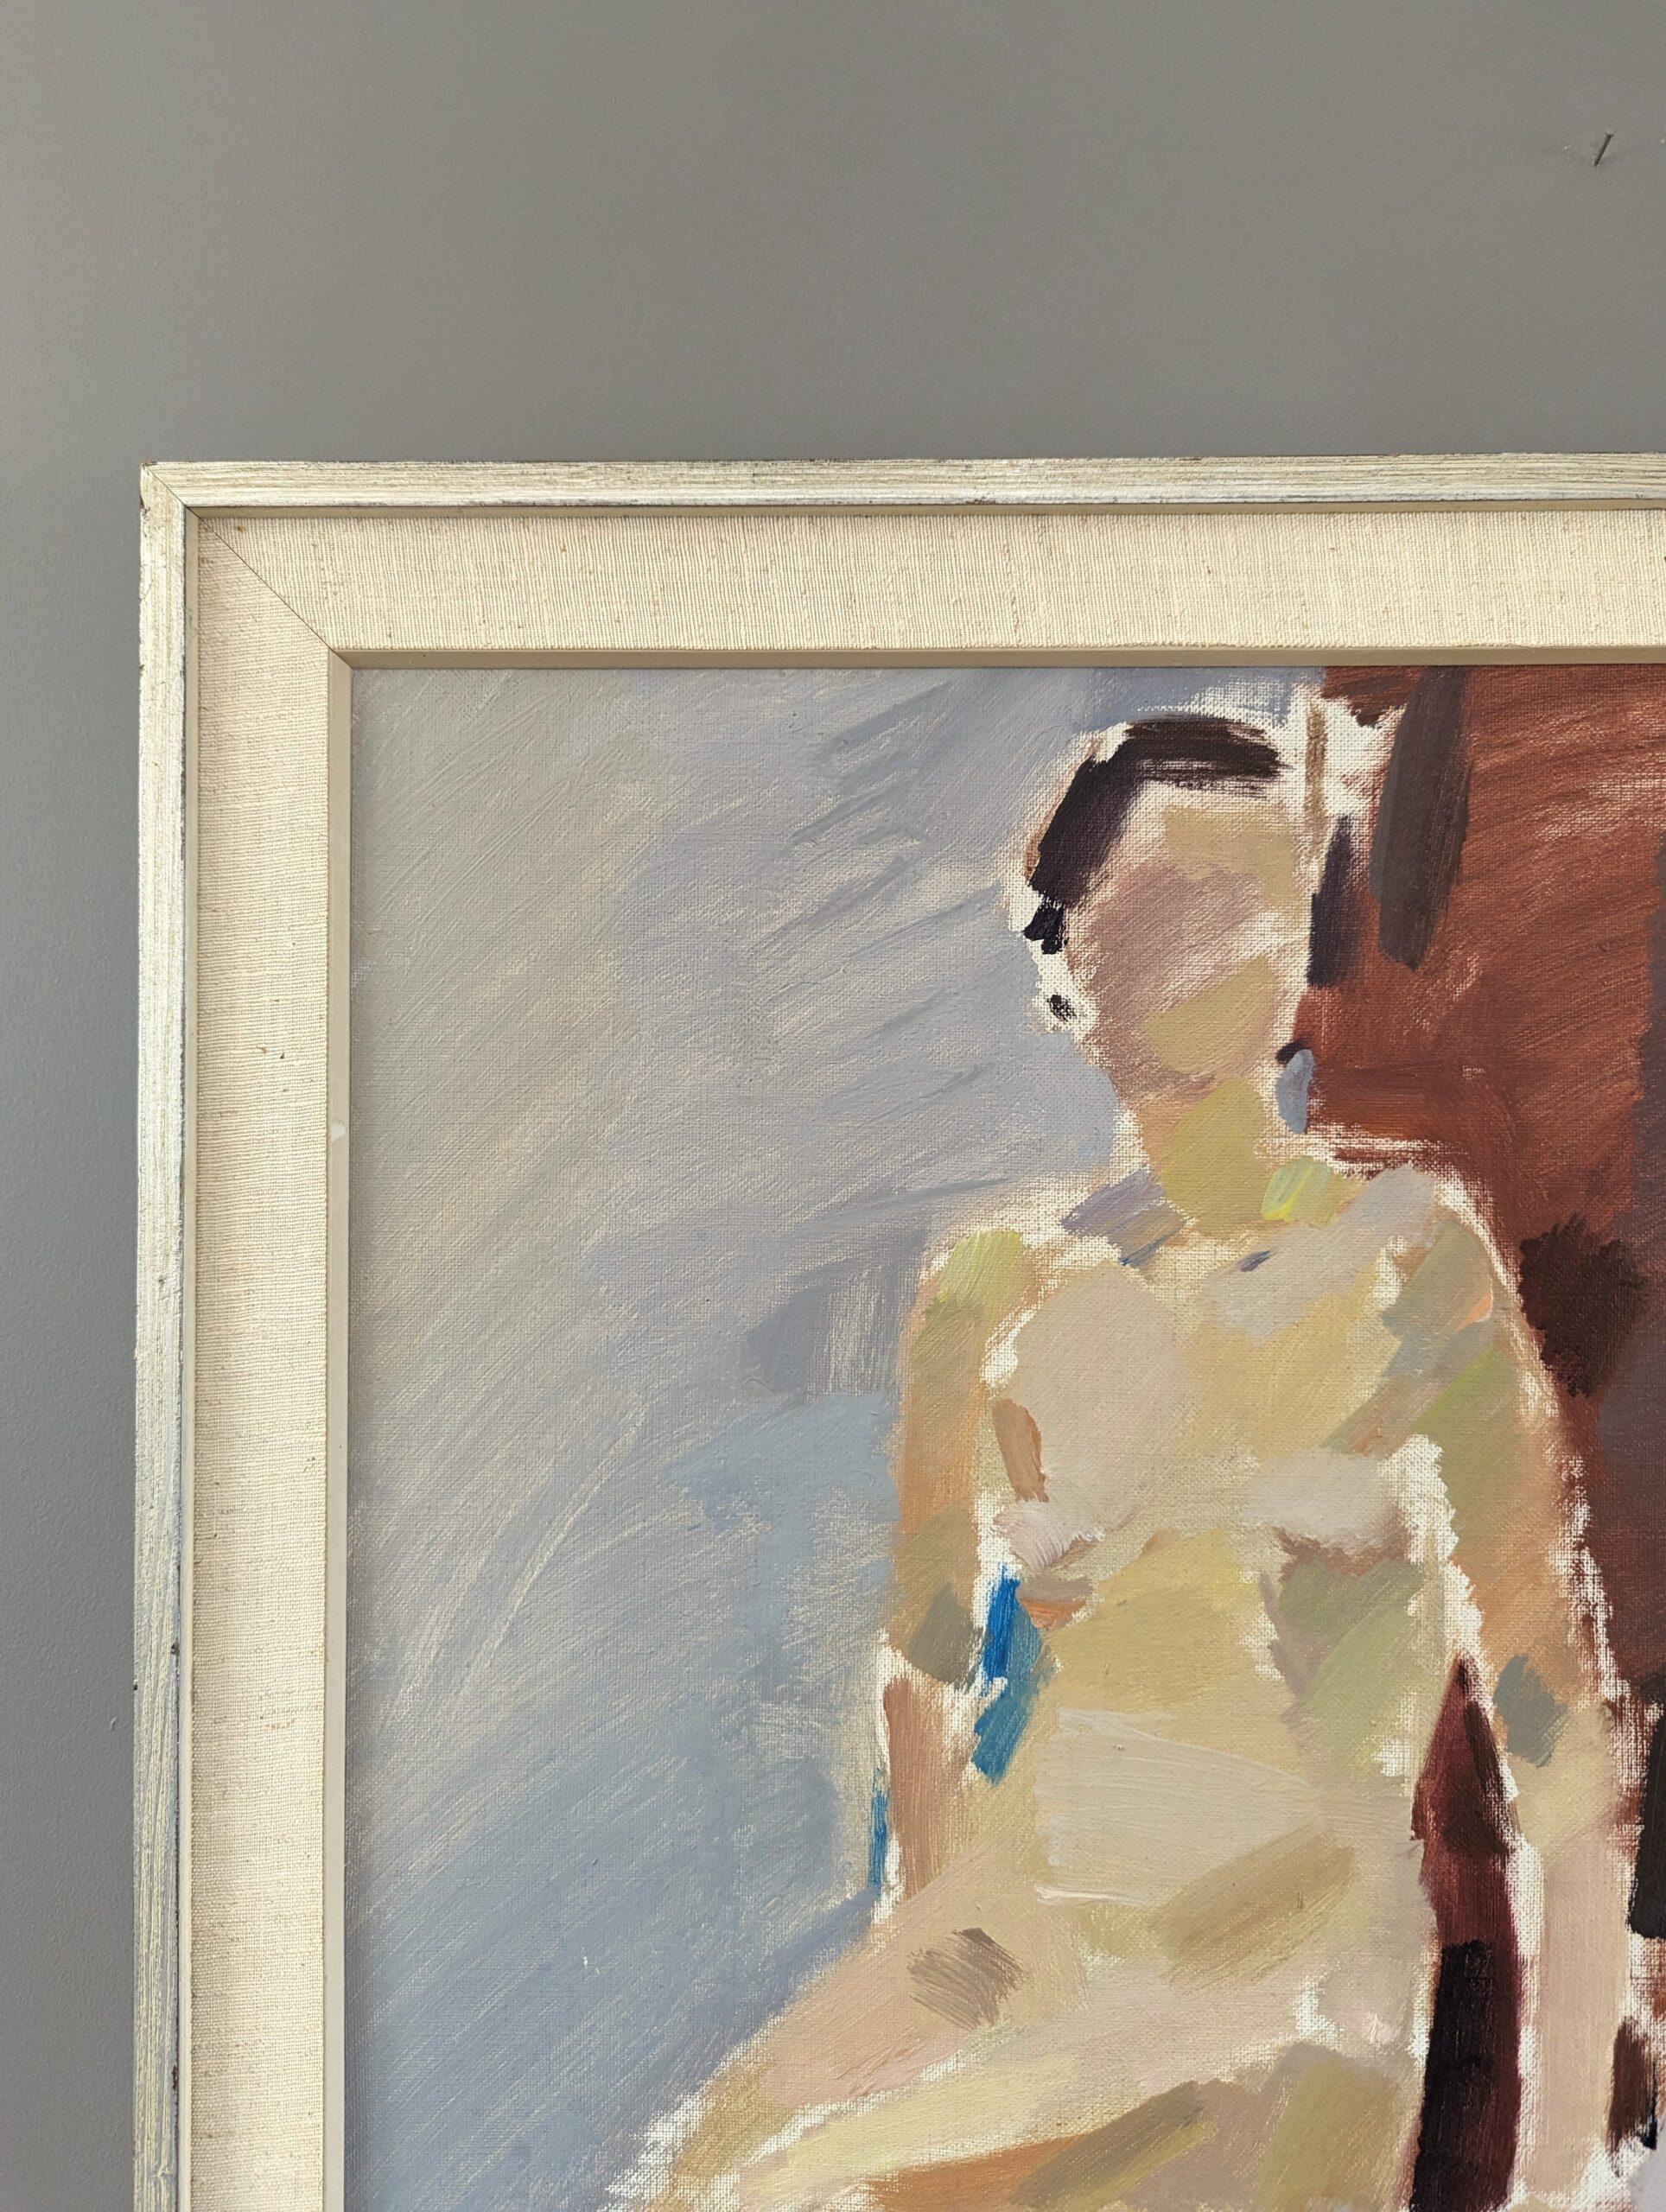 SUR LA CHAISE ROUGE
Dimensions : 71,5 x 50 cm (cadre compris)
Huile sur panneau

Une grande composition à l'huile moderniste du milieu du siècle, très bien exécutée, peinte sur toile et datée de 1962.

Dans cette étude d'une figure nue, l'artiste a